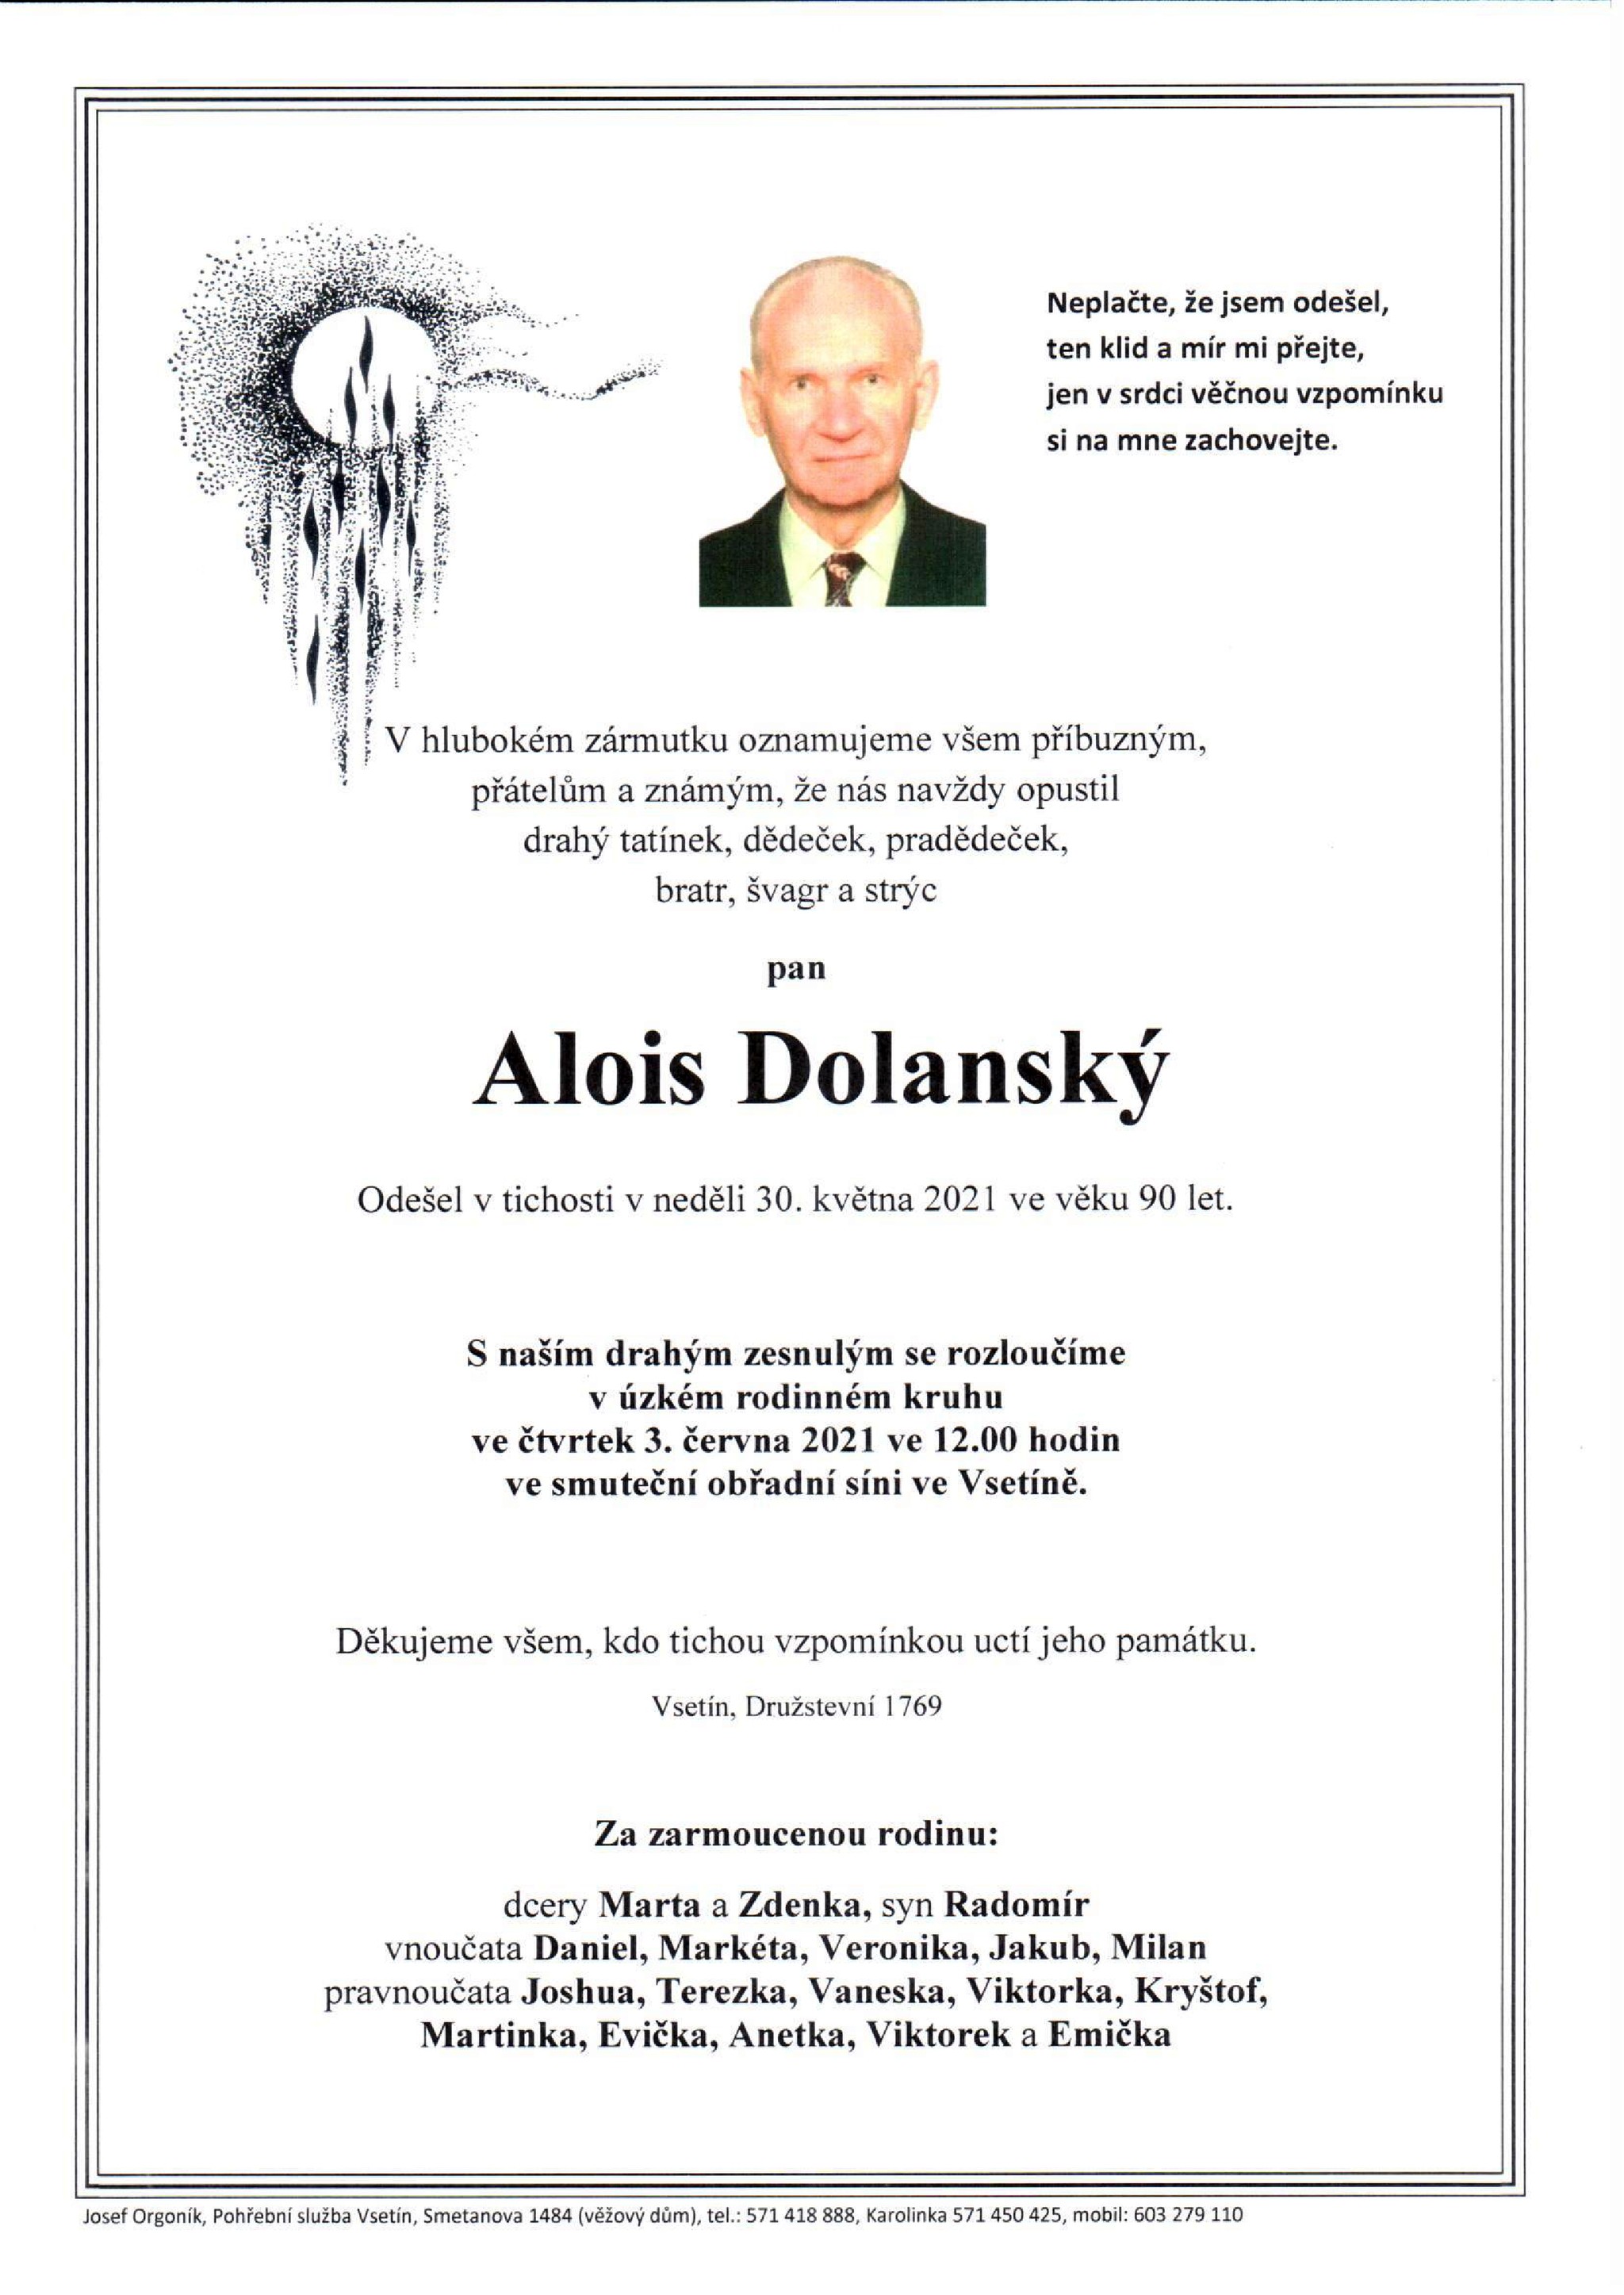 Alois Dolanský